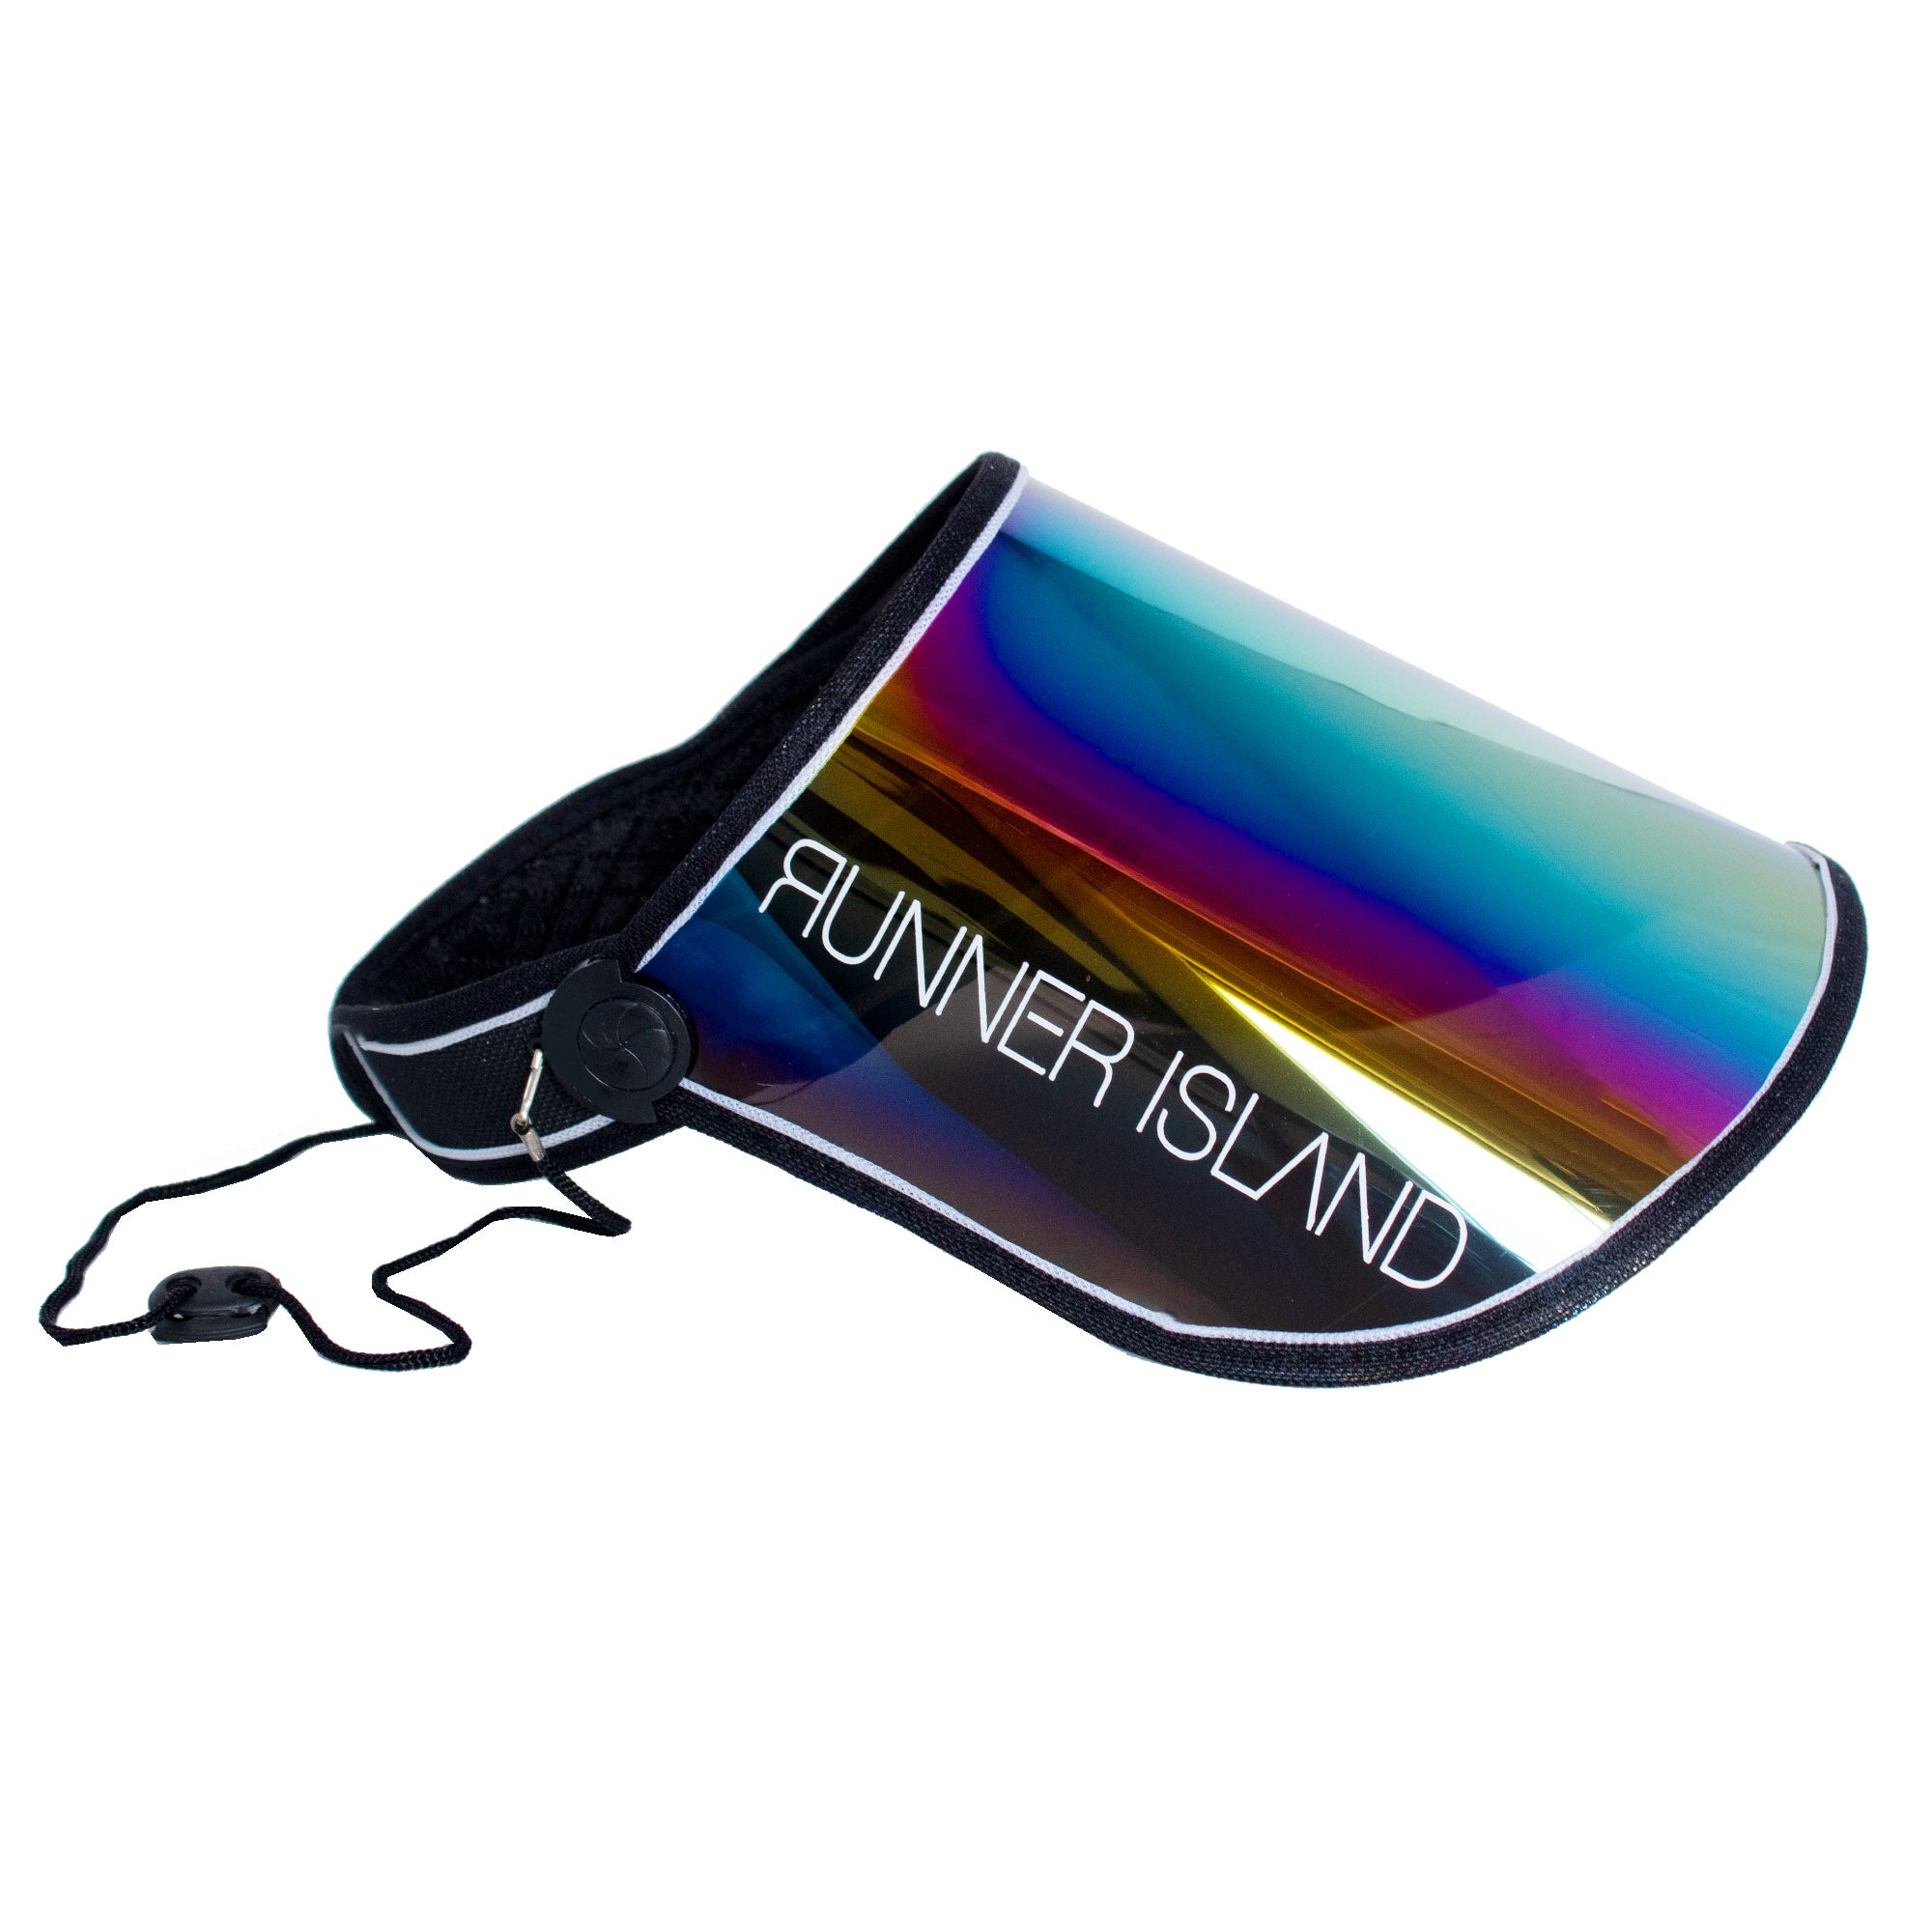 Runner Island Face Shield Sunglasses Visor - Black